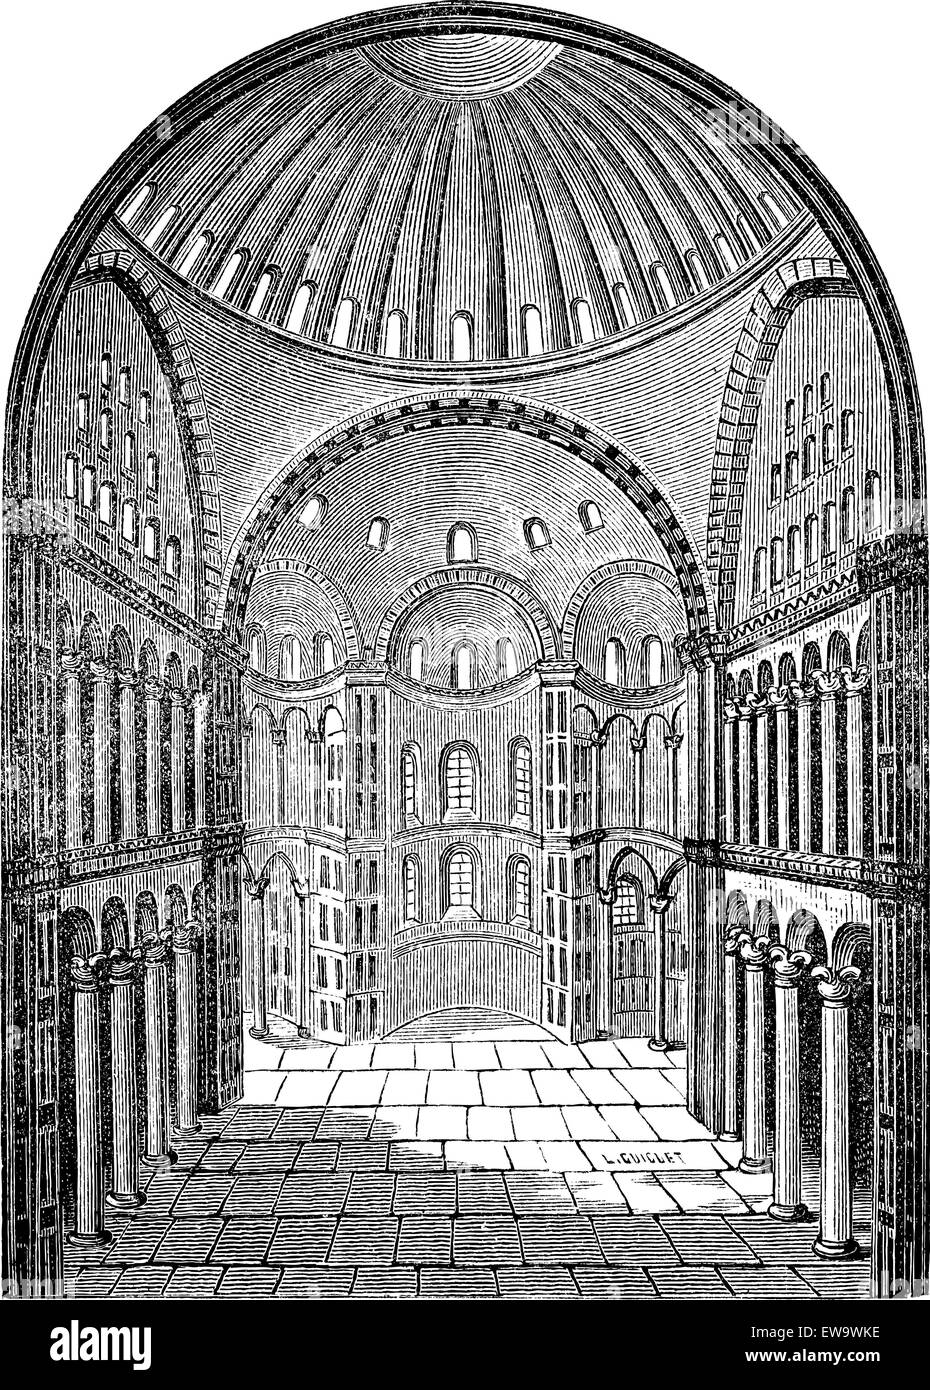 Vista interior de la Catedral de Santa Sofía Hagia Sophia en Estambul, Turquía, vintage ilustración grabada. Enciclopedia Industrial - E.O. Lami - 1875 Ilustración del Vector